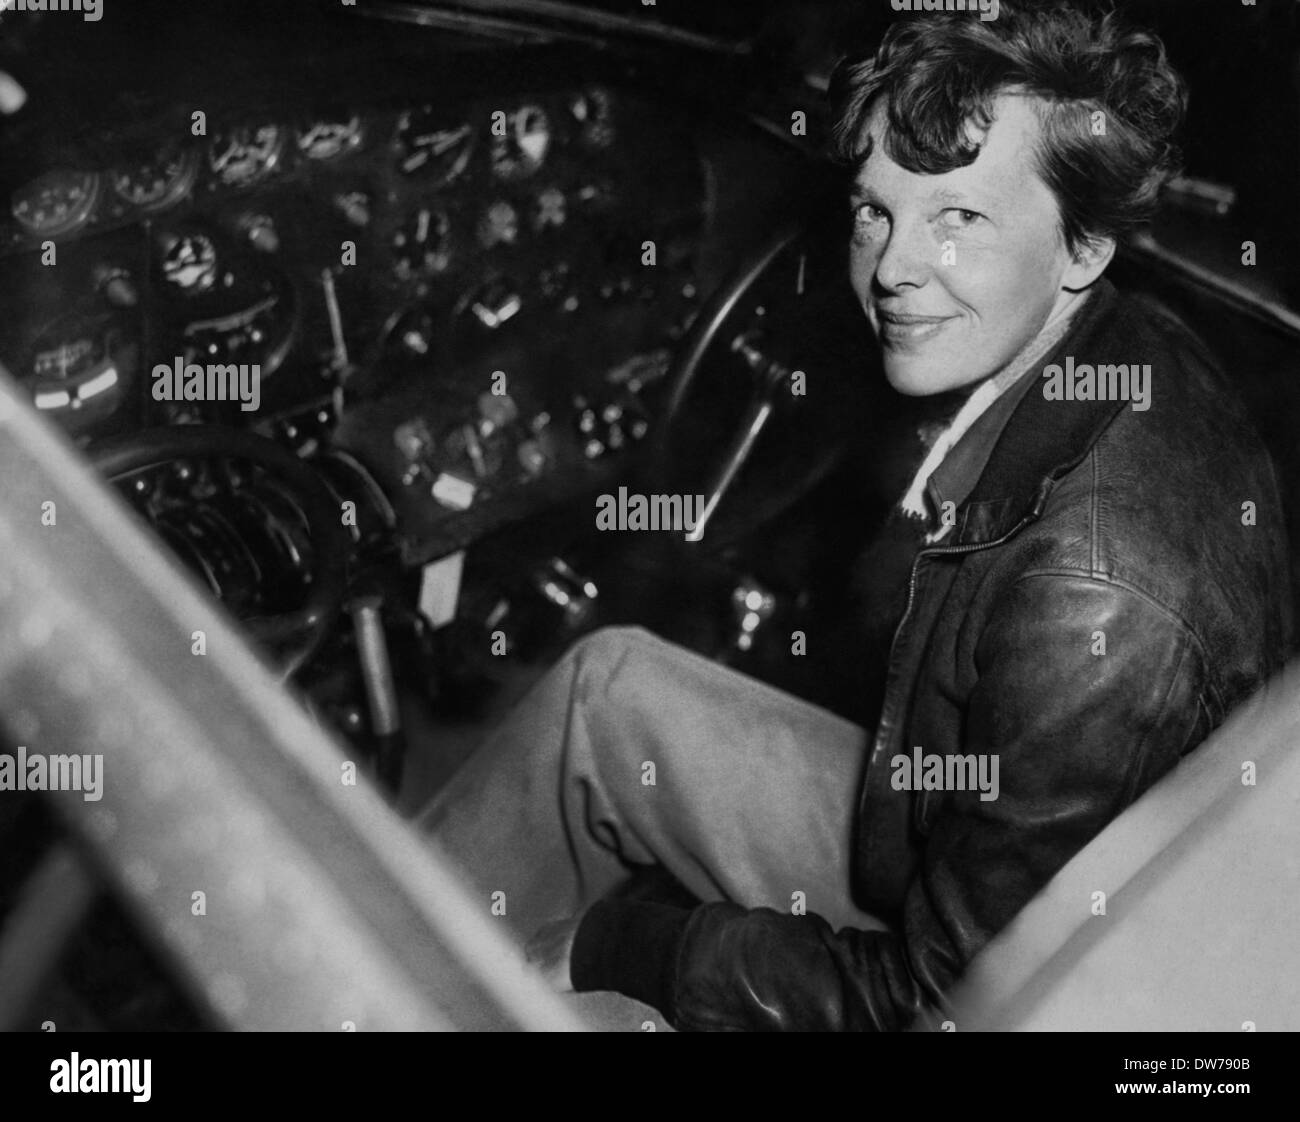 Luftfahrt-Pionier Amelia Earhart stellt sitzen im Cockpit eines Flugzeuges Electra 15. Dezember 1937. Earhart war die erste weibliche Flieger Solo über den Atlantik zu fliegen Stockfoto